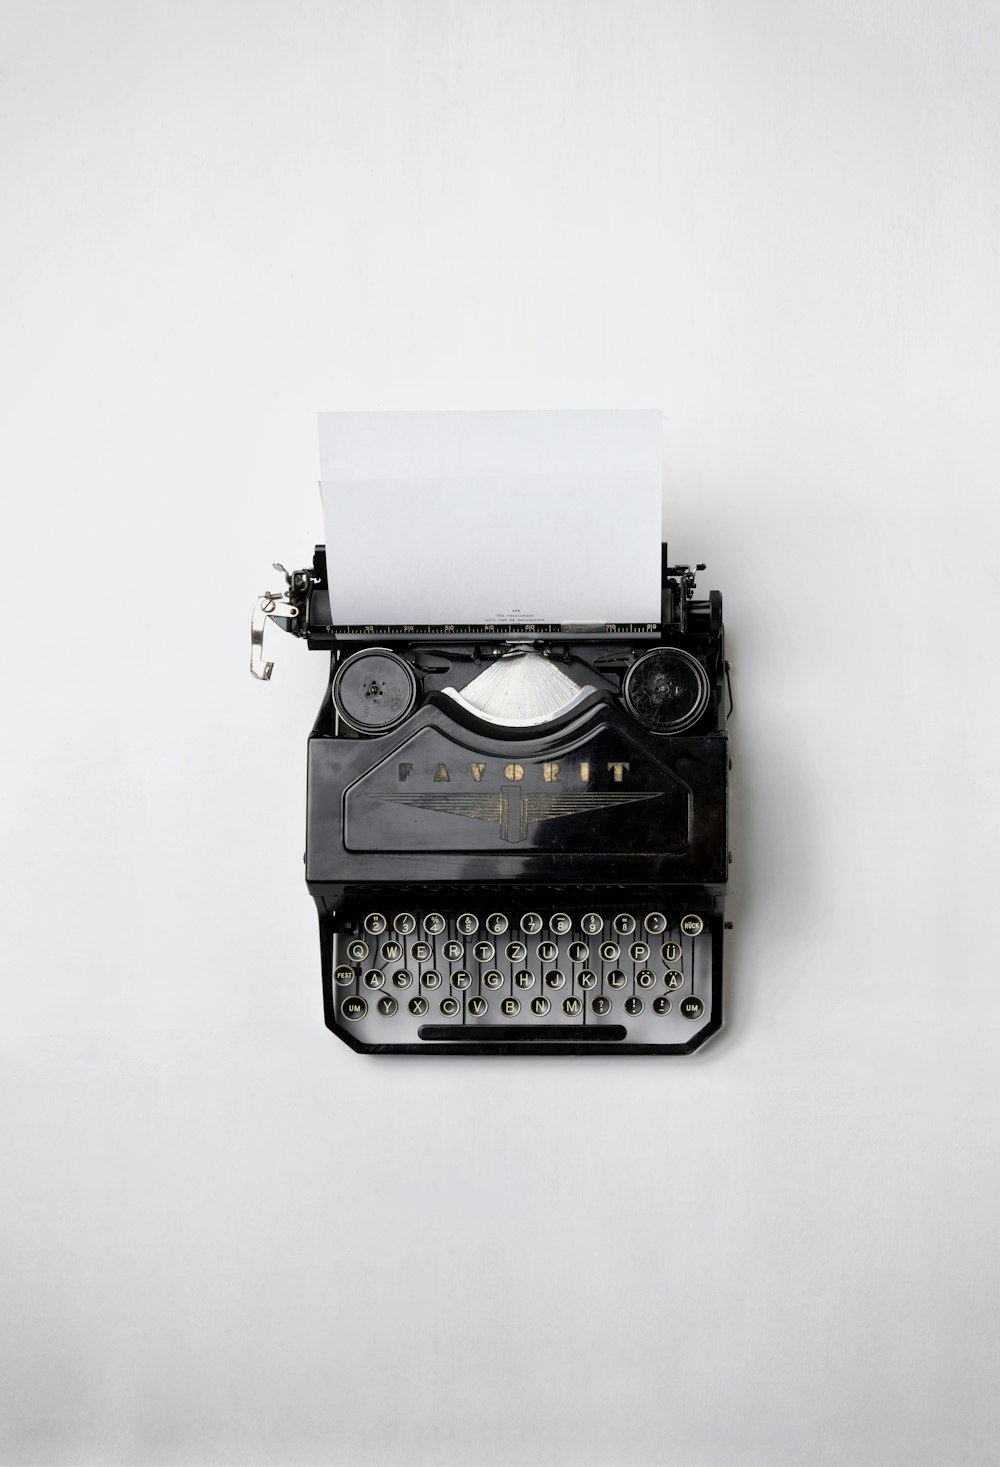 máquina de escrever Fayorit preta com papel de impressora